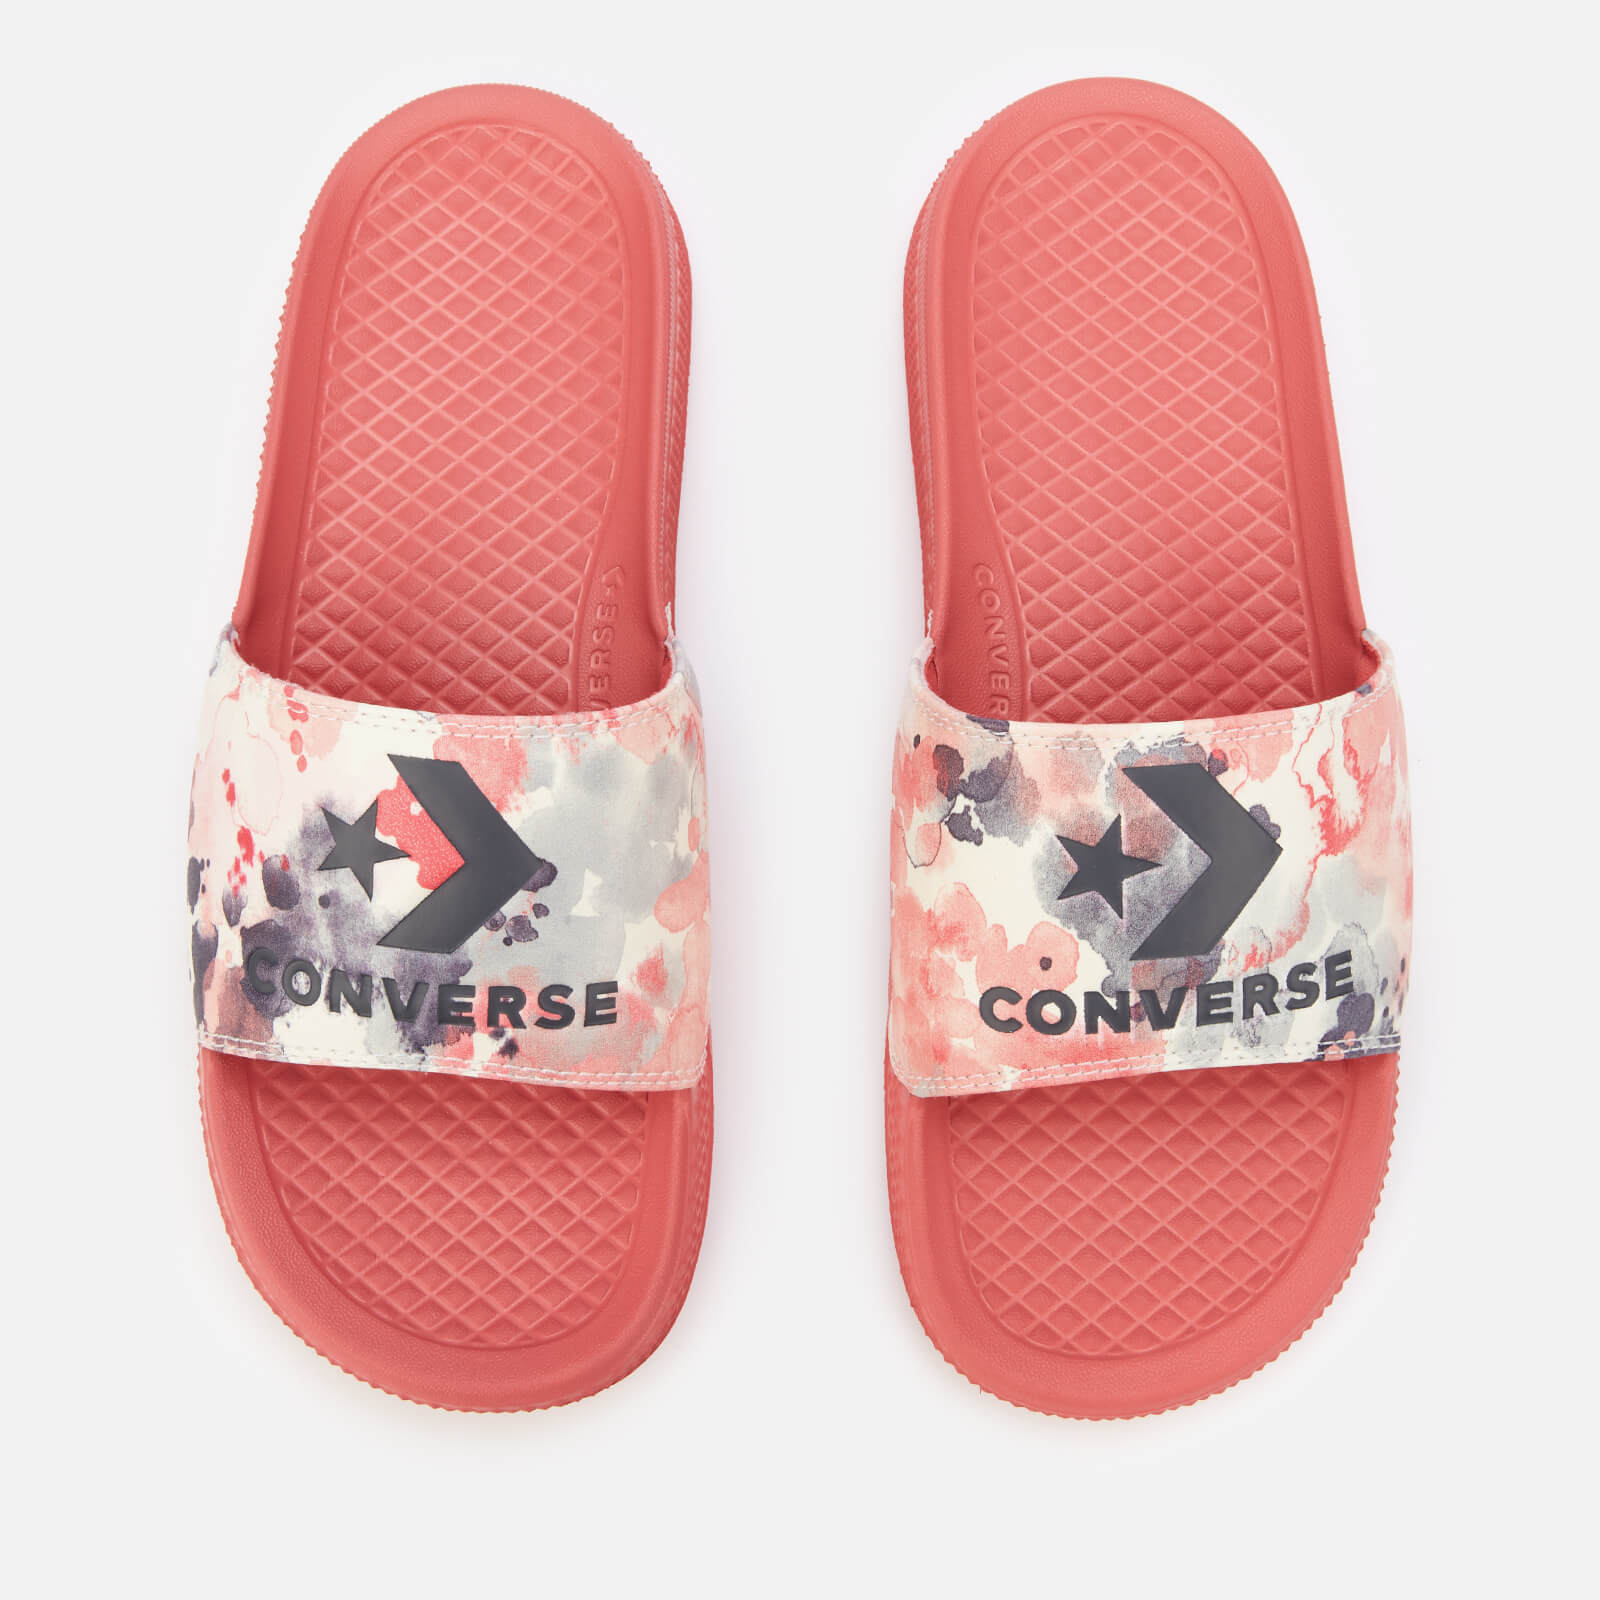 Converse Women's All Star Summer Fest Slide Sandals - Terracotta Pink/Egret/Storm Wind - UK 3